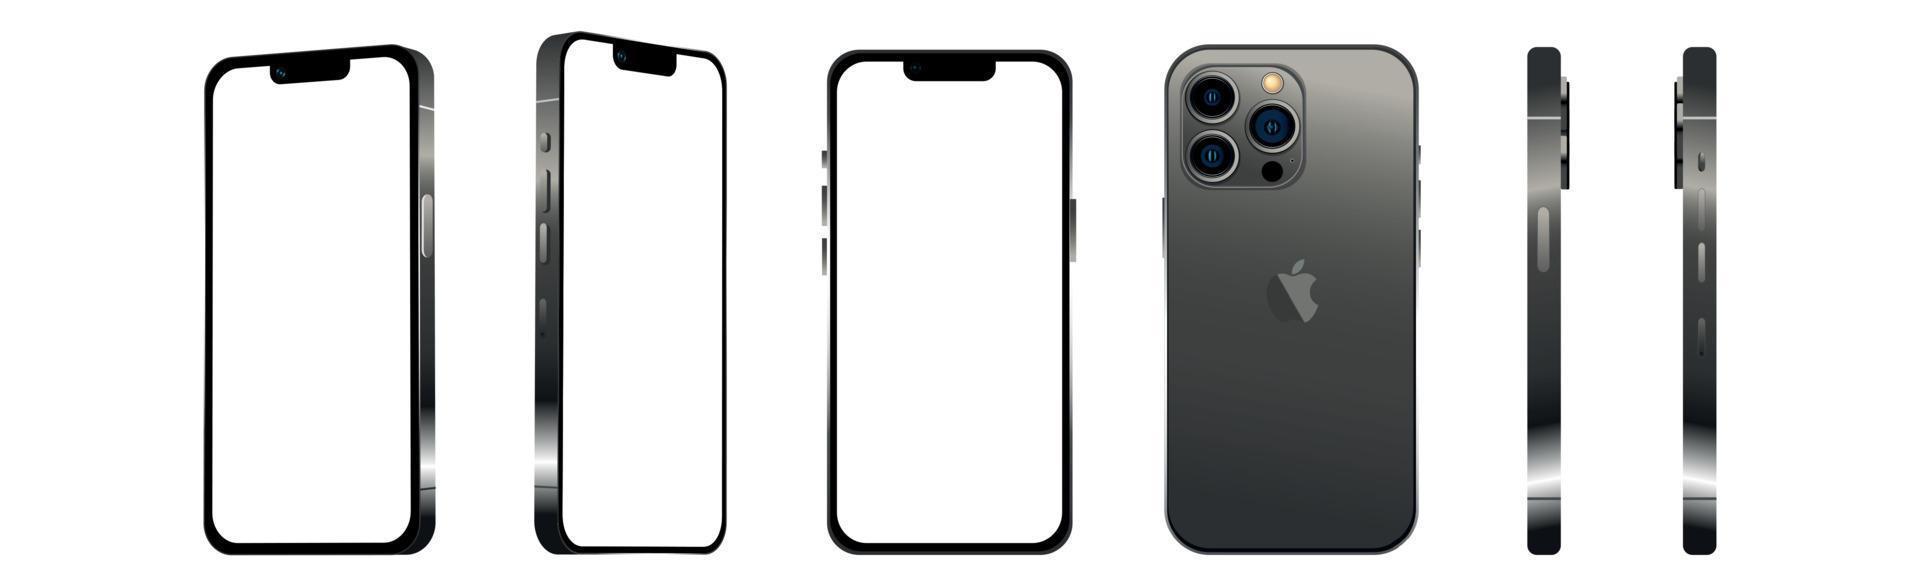 negro moderno smartphone móvil iphone 13 pro en 6 ángulos diferentes sobre un fondo blanco - vector